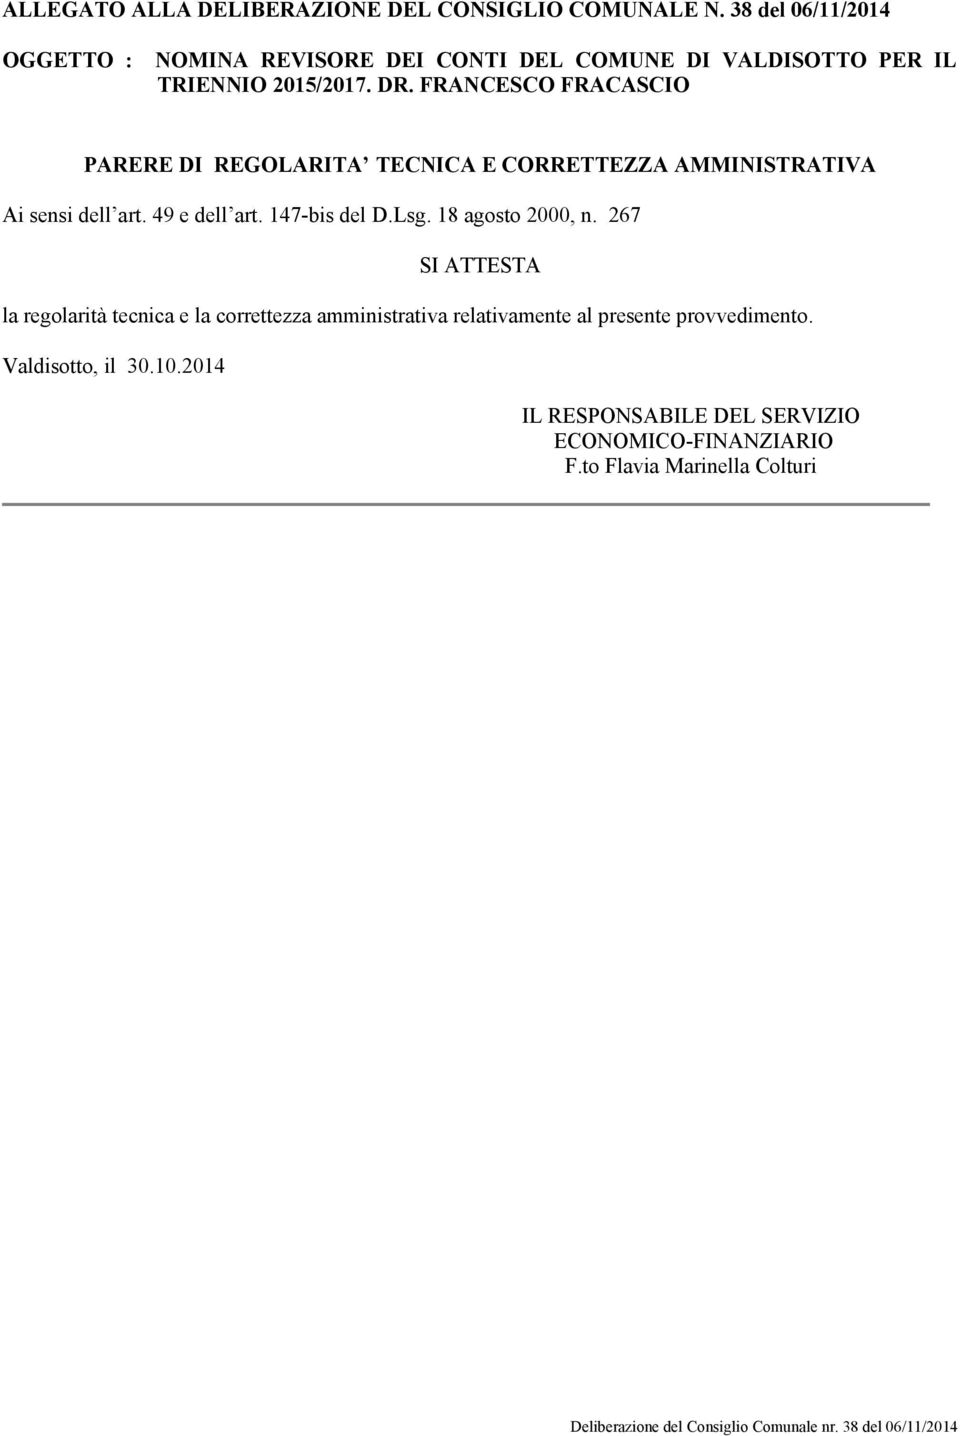 FRANCESCO FRACASCIO PARERE DI REGOLARITA TECNICA E CORRETTEZZA AMMINISTRATIVA Ai sensi dell art. 49 e dell art. 147-bis del D.Lsg.